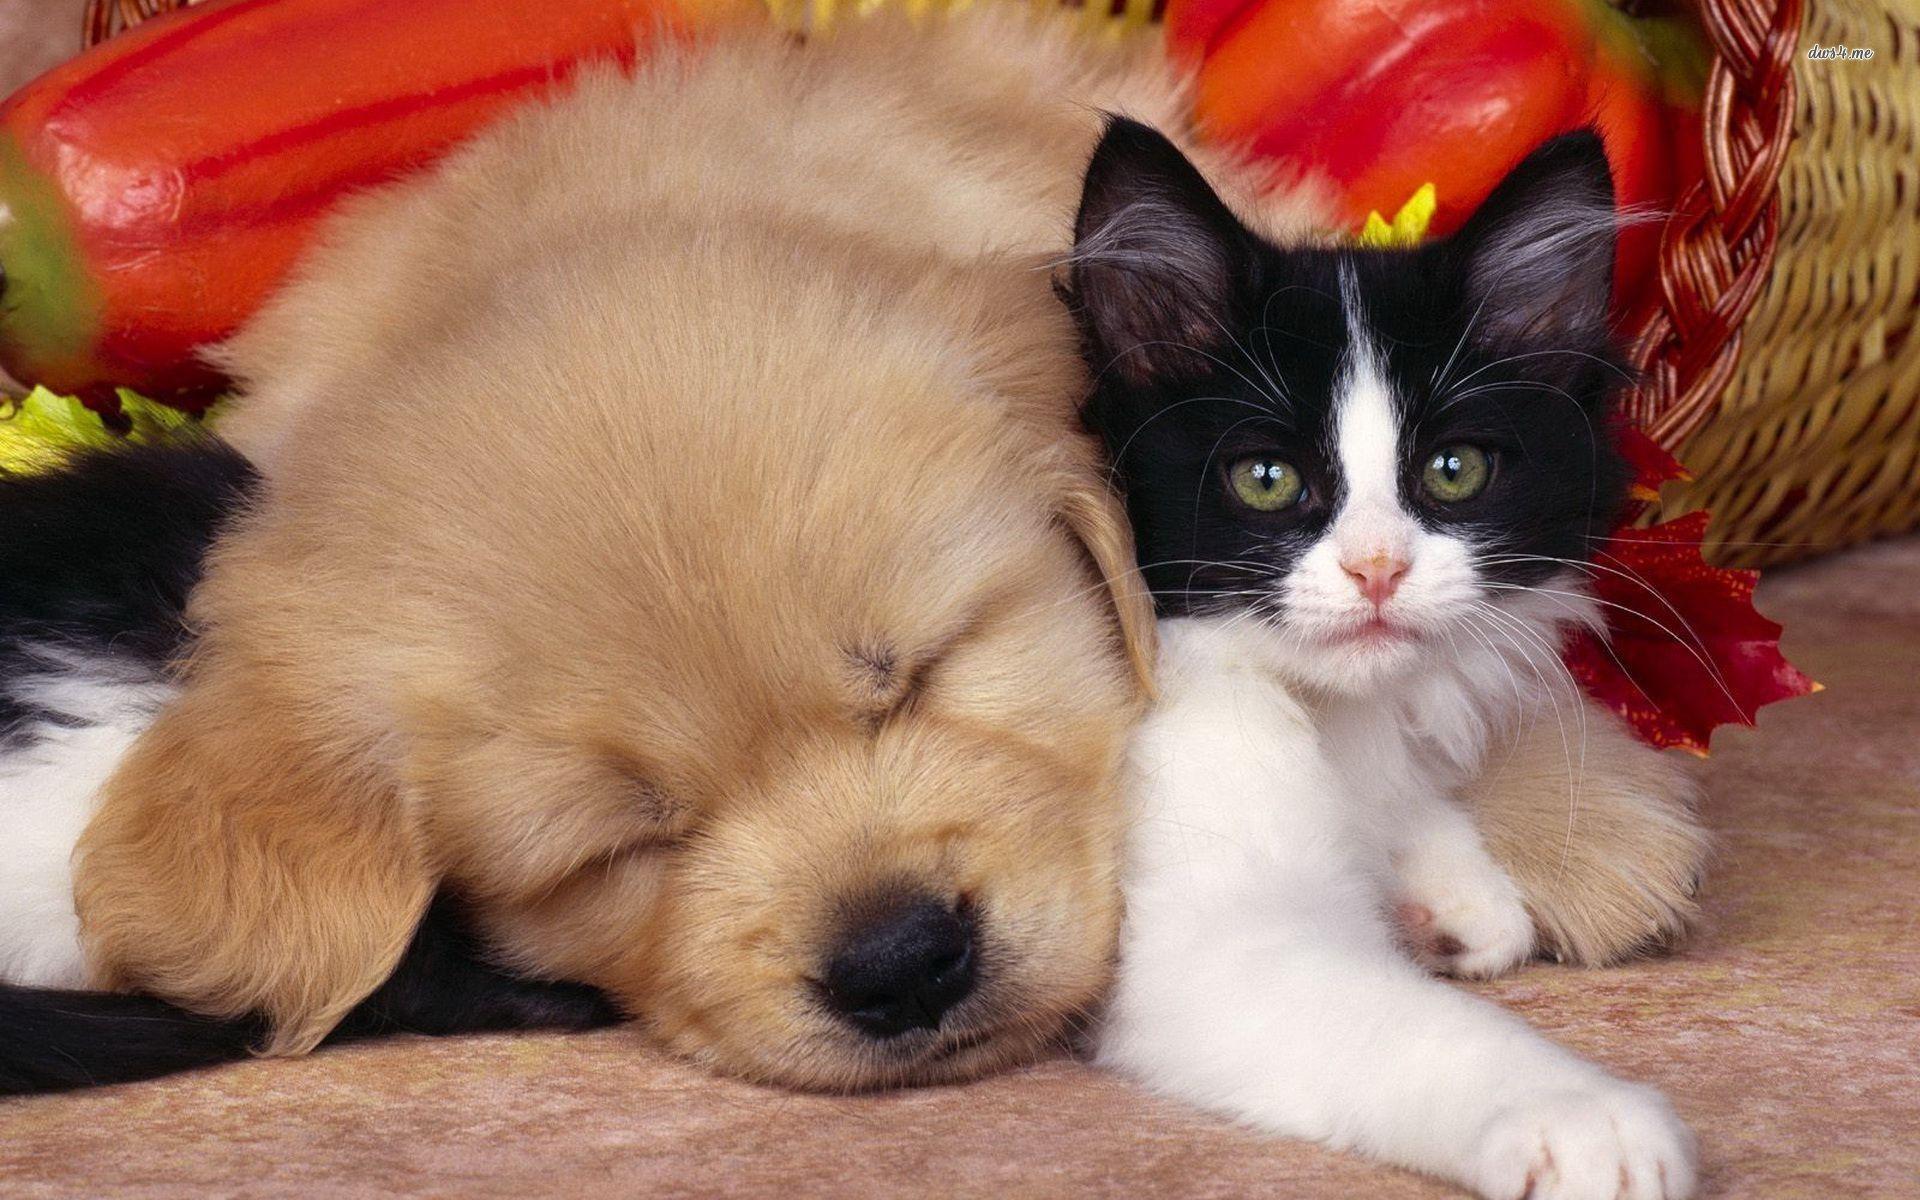 Cute Dog and Cat Wallpaper  PixelsTalkNet